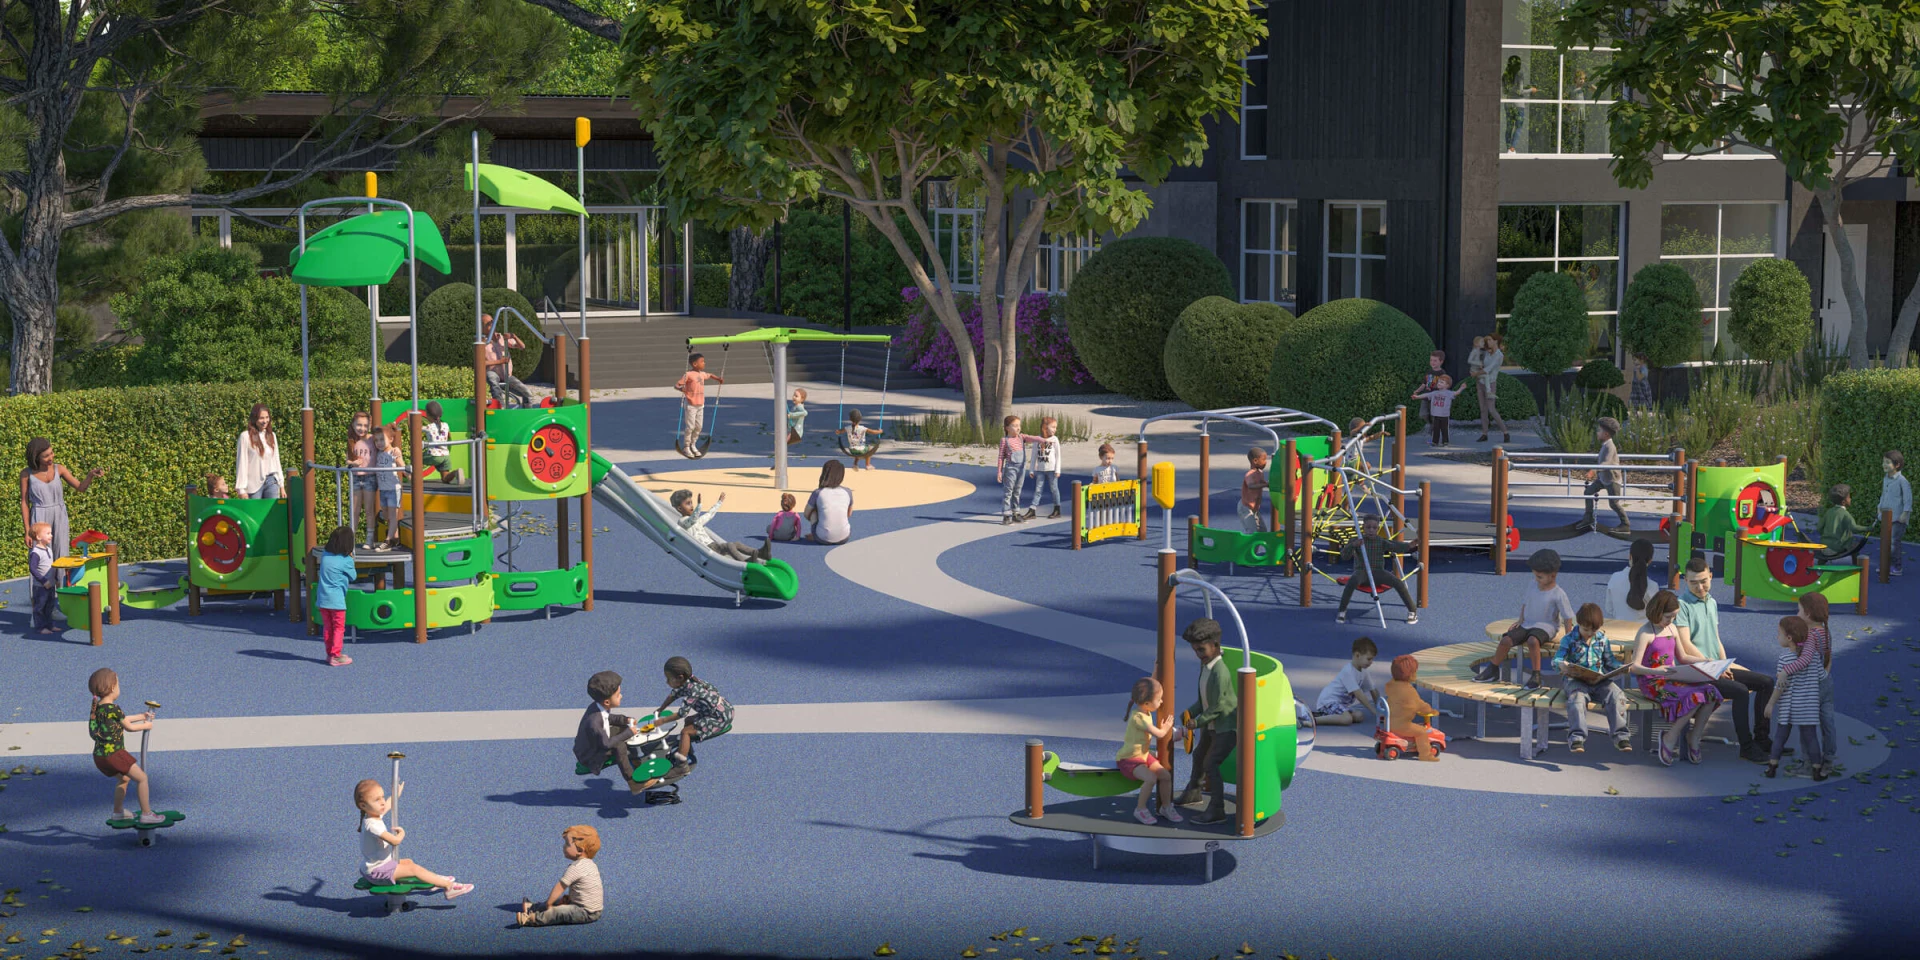 Design-Vorschlag eines Spielplatzes mit vielen Spieloptionen für Kinder